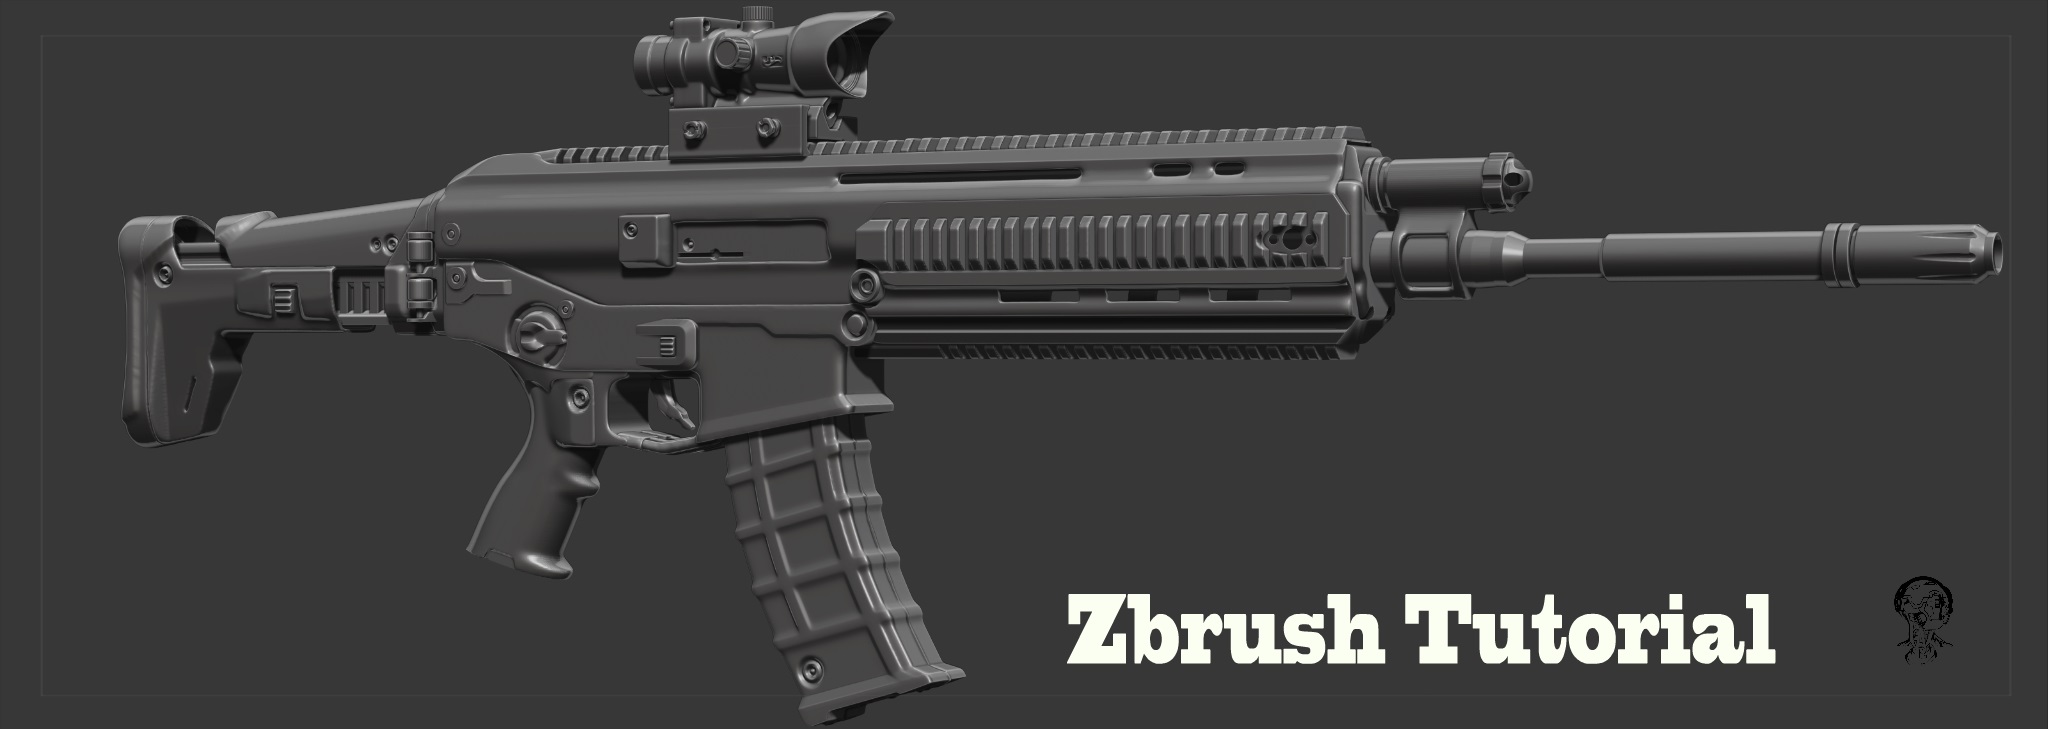 free zbrush gun